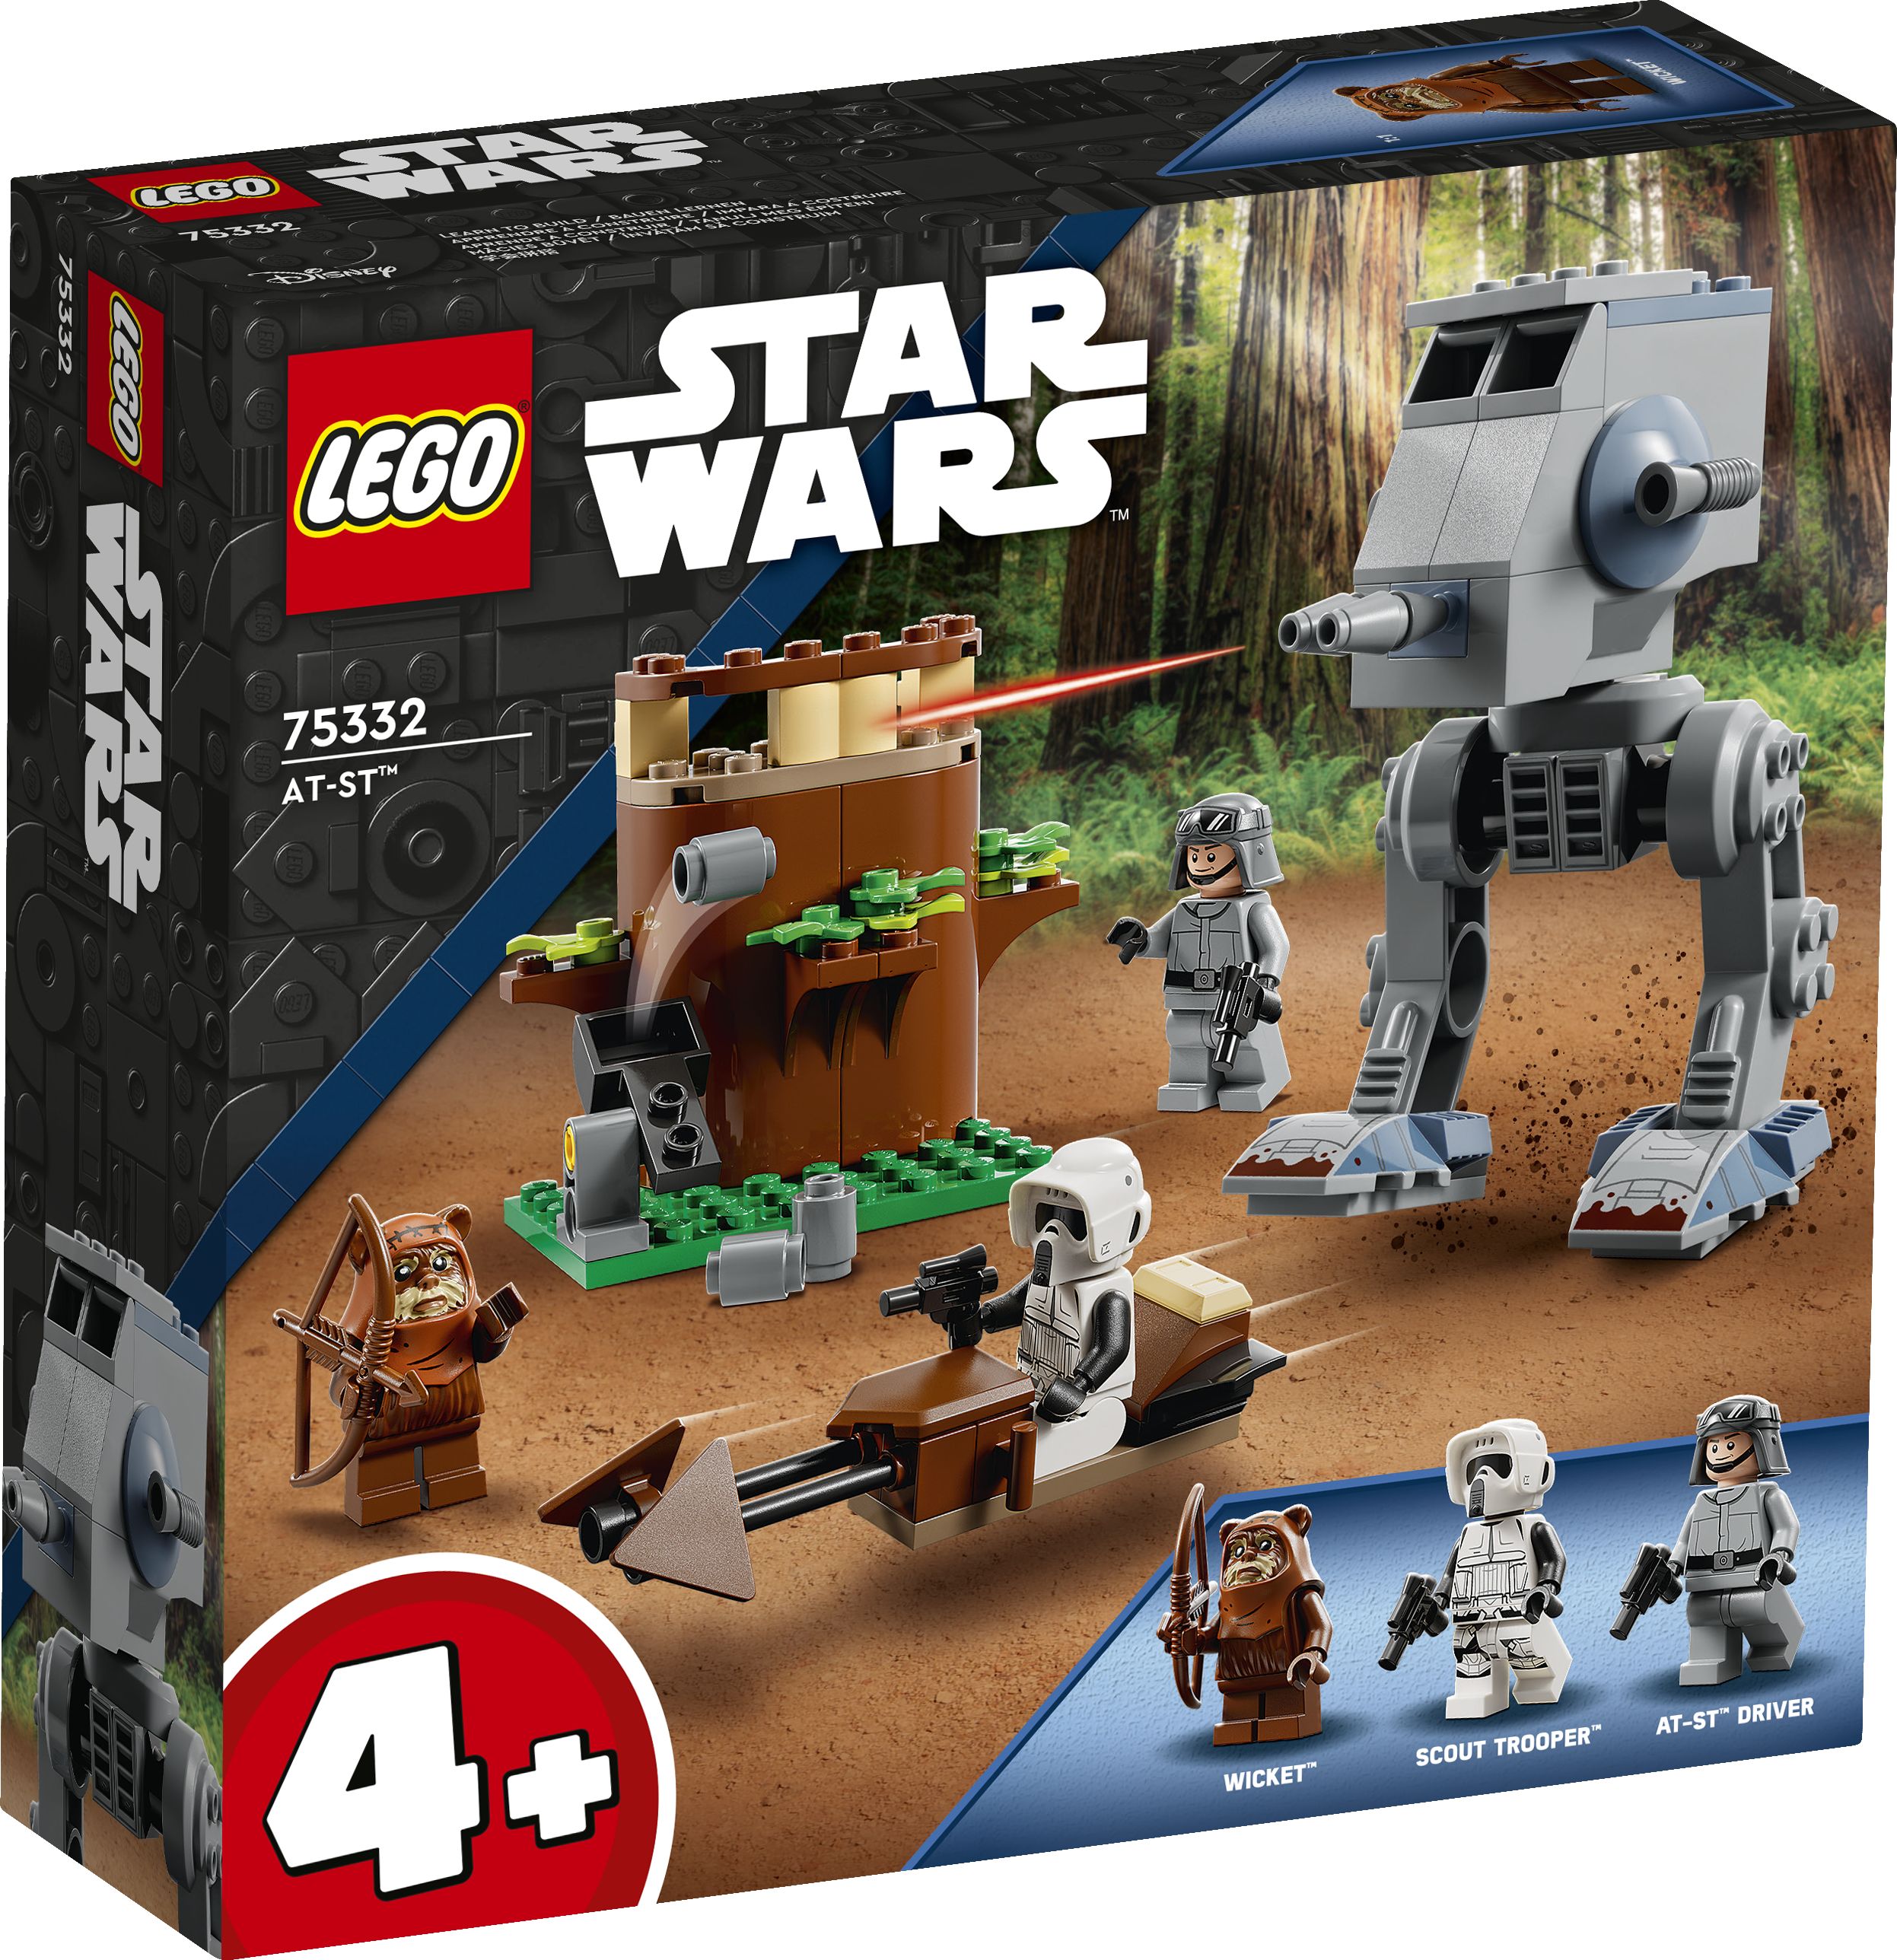 LEGO Star Wars 75332 AT-ST™ LEGO_75332_Box1_V29.jpg